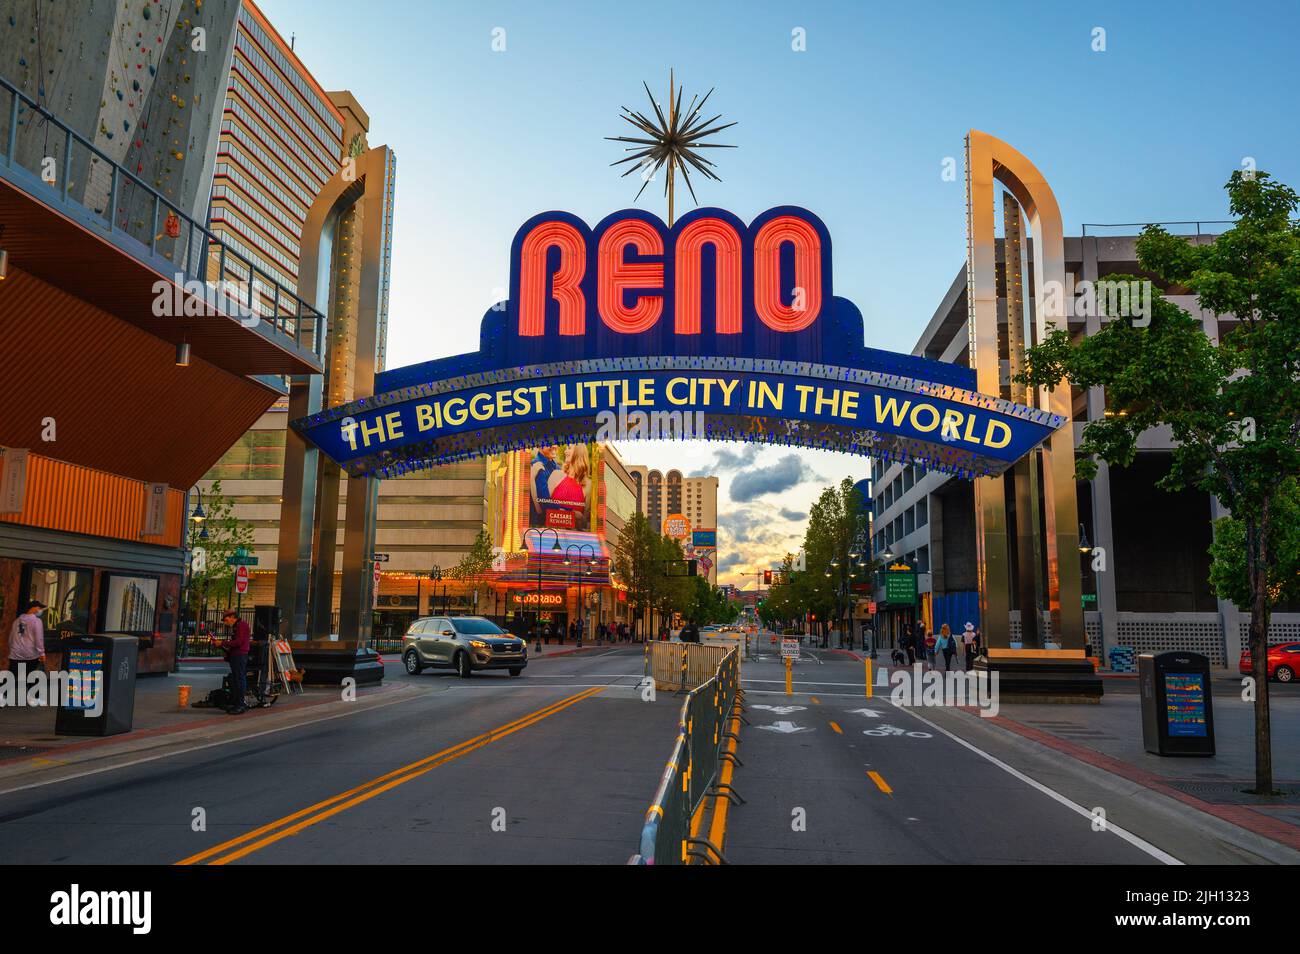 Reno La pequeña ciudad más grande en el signo del arco del mundo en el centro de Reno, Nevada Foto de stock